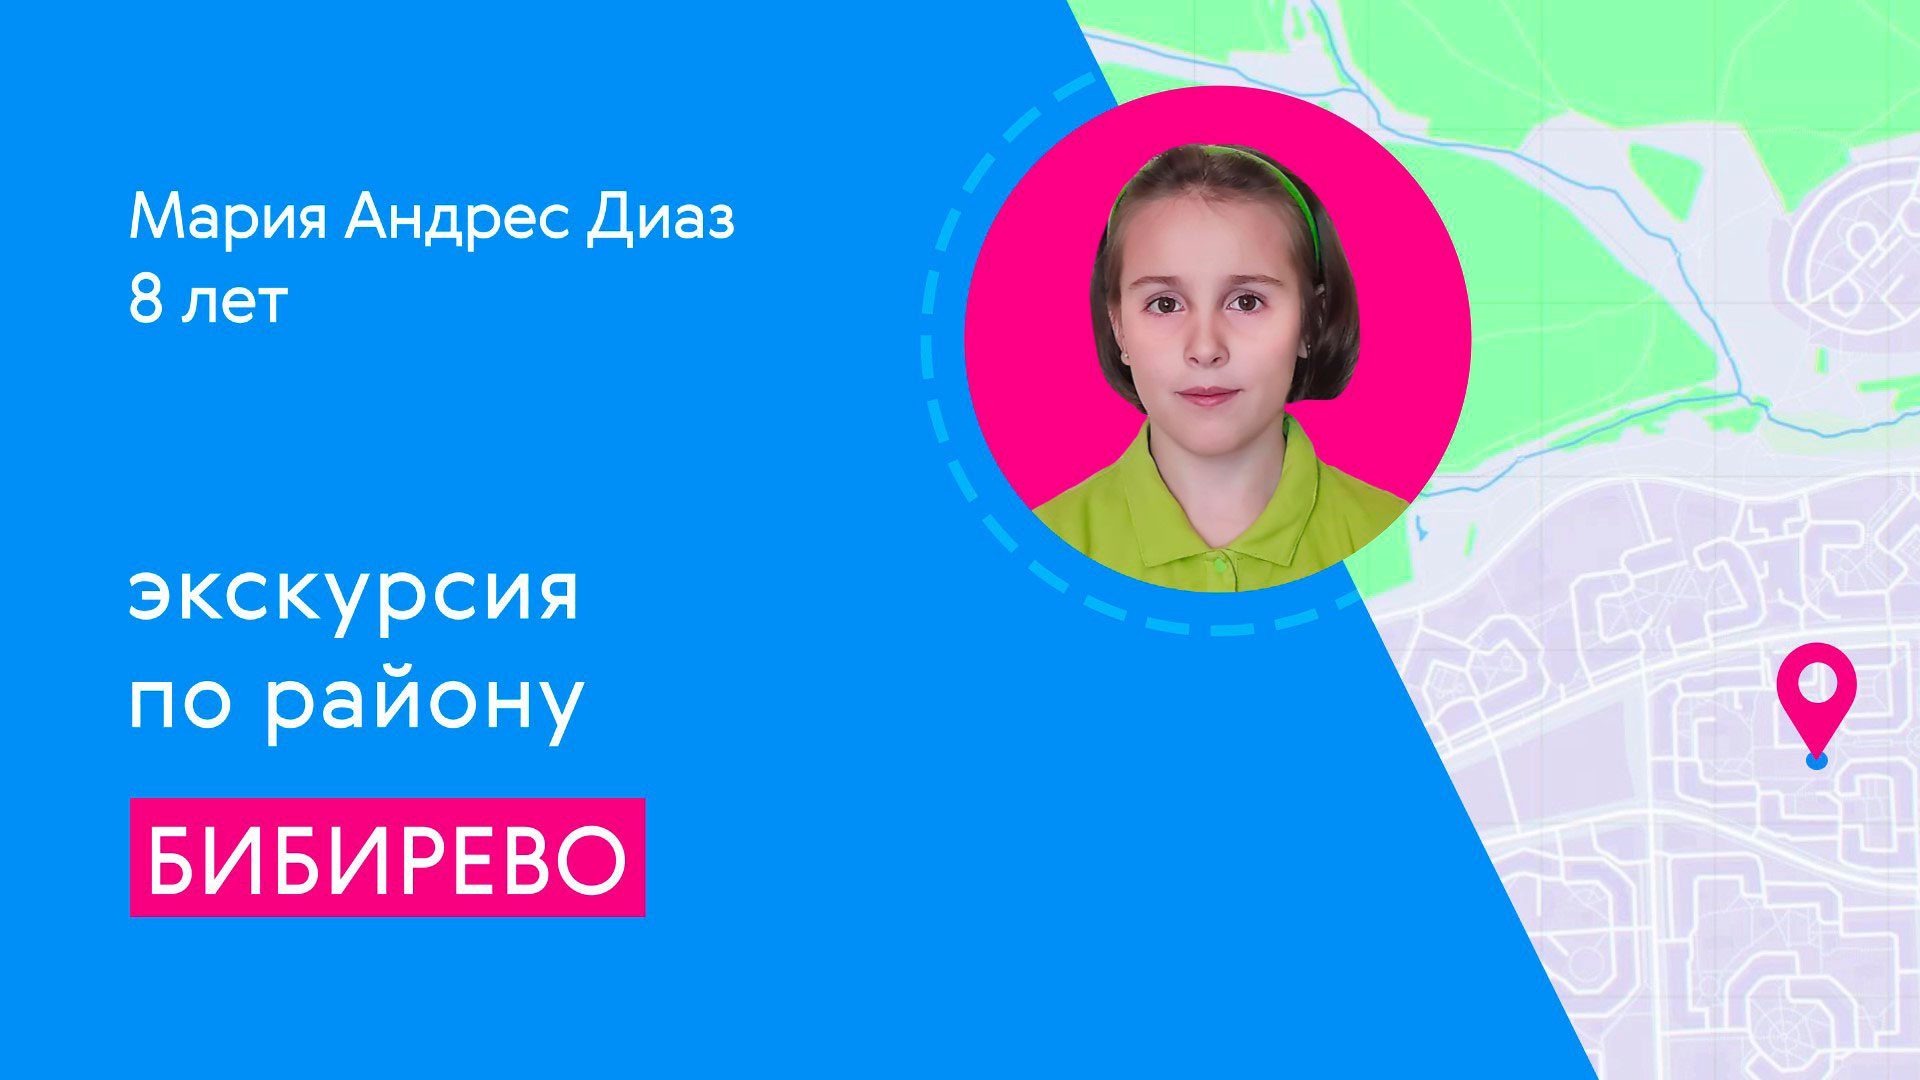 Районы Москвы глазами детей: Бибирево